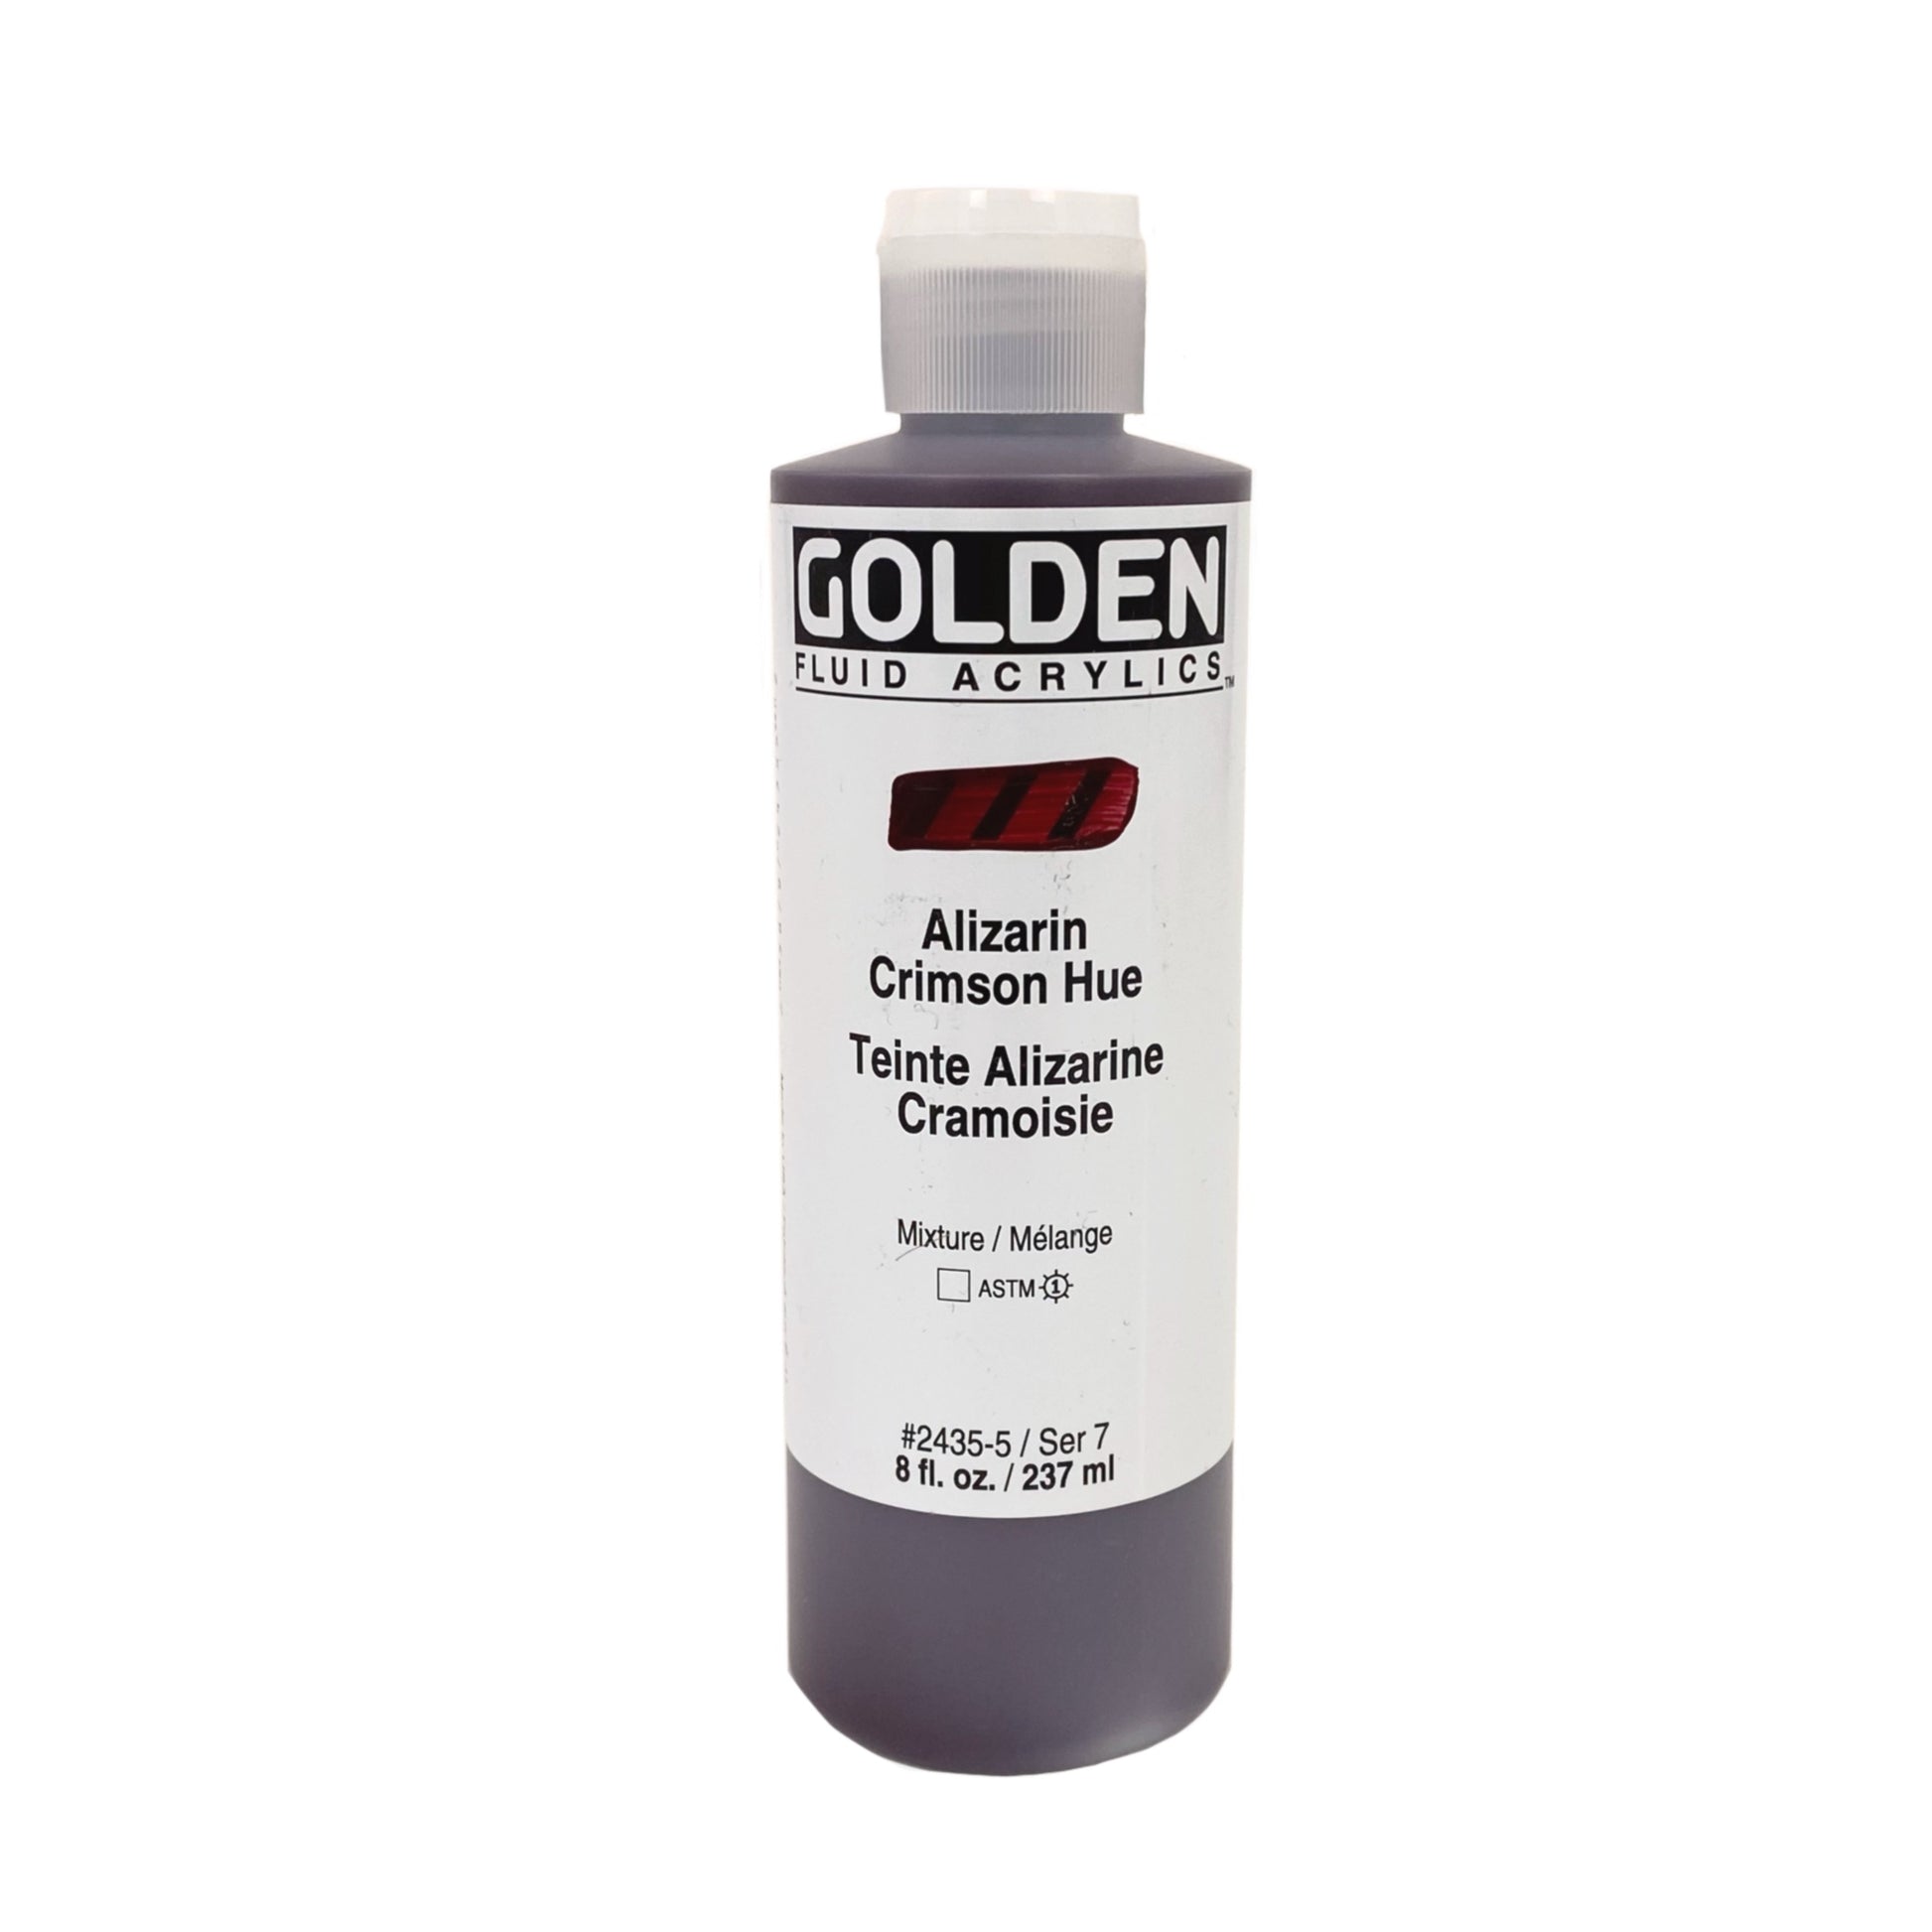 Golden Artist Colors Fluid Acrylic Paint (Set of 8)